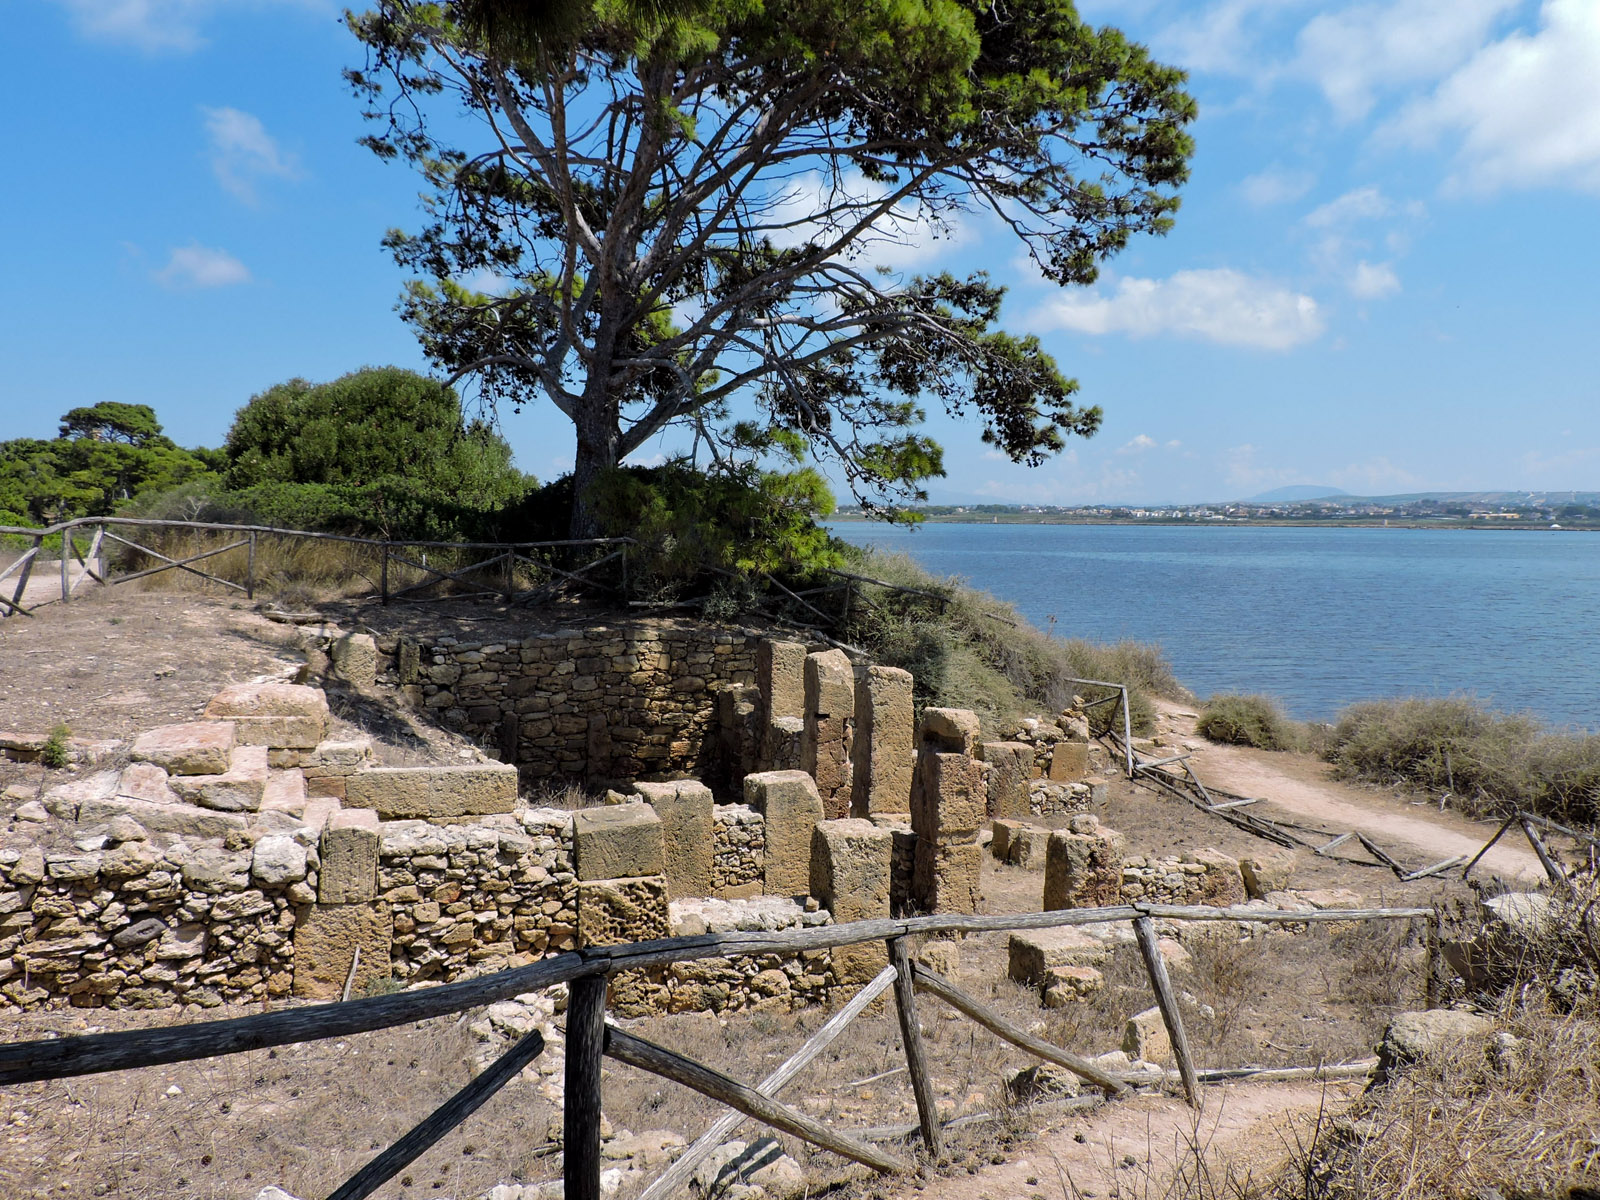 alberi svettanti e i resti fenici sull'isola di Mozia: la storia e la natura in Sicilia